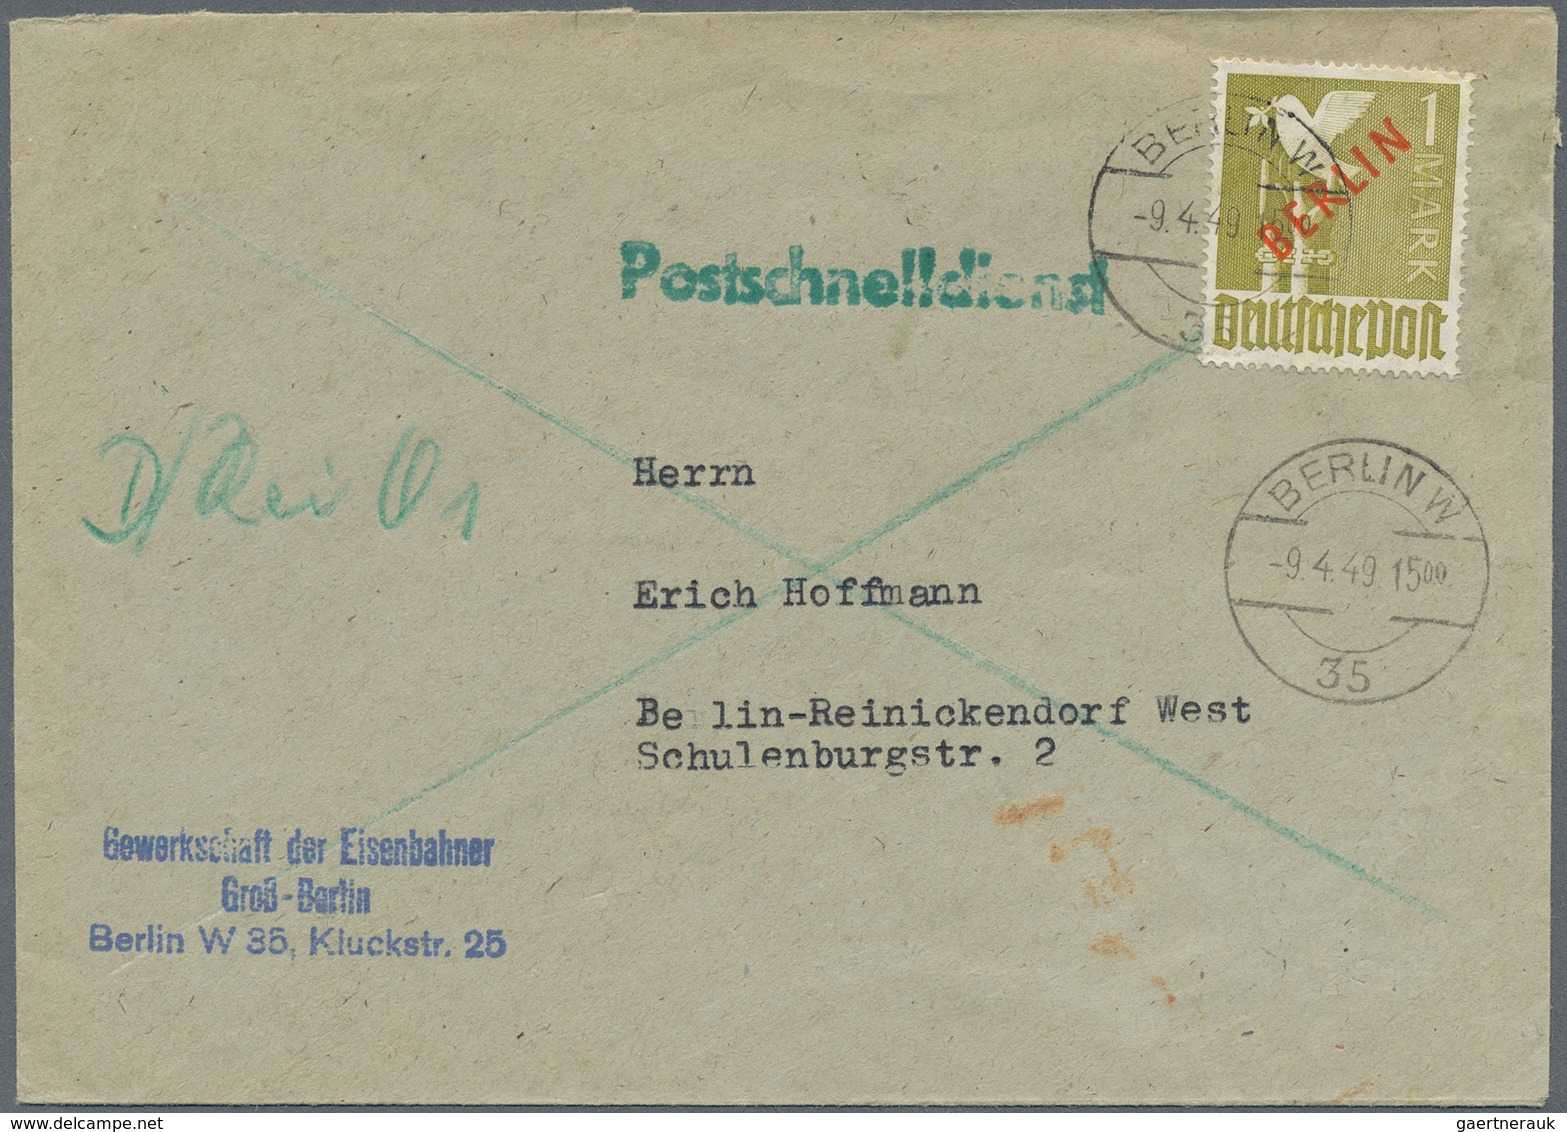 Berlin - Postschnelldienst: 1 DM Rotaufdruck Als EF Auf Postschnelldienstbf. Ab Berlin W35 Vom 9.4.4 - Storia Postale